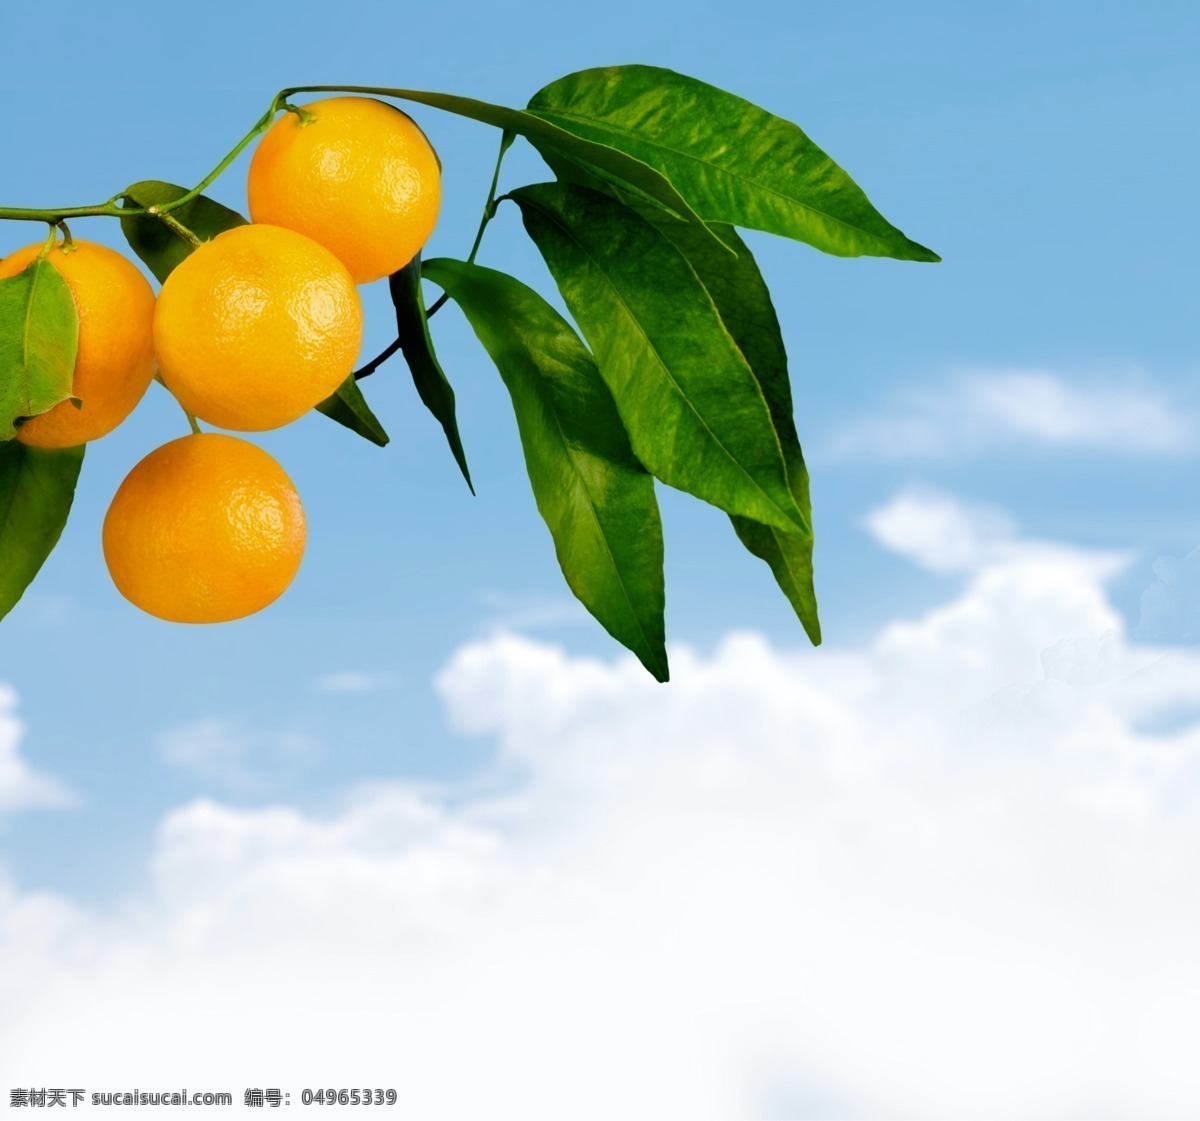 柑橘 橘子 爱媛 橙子 水果 枝叶 植物